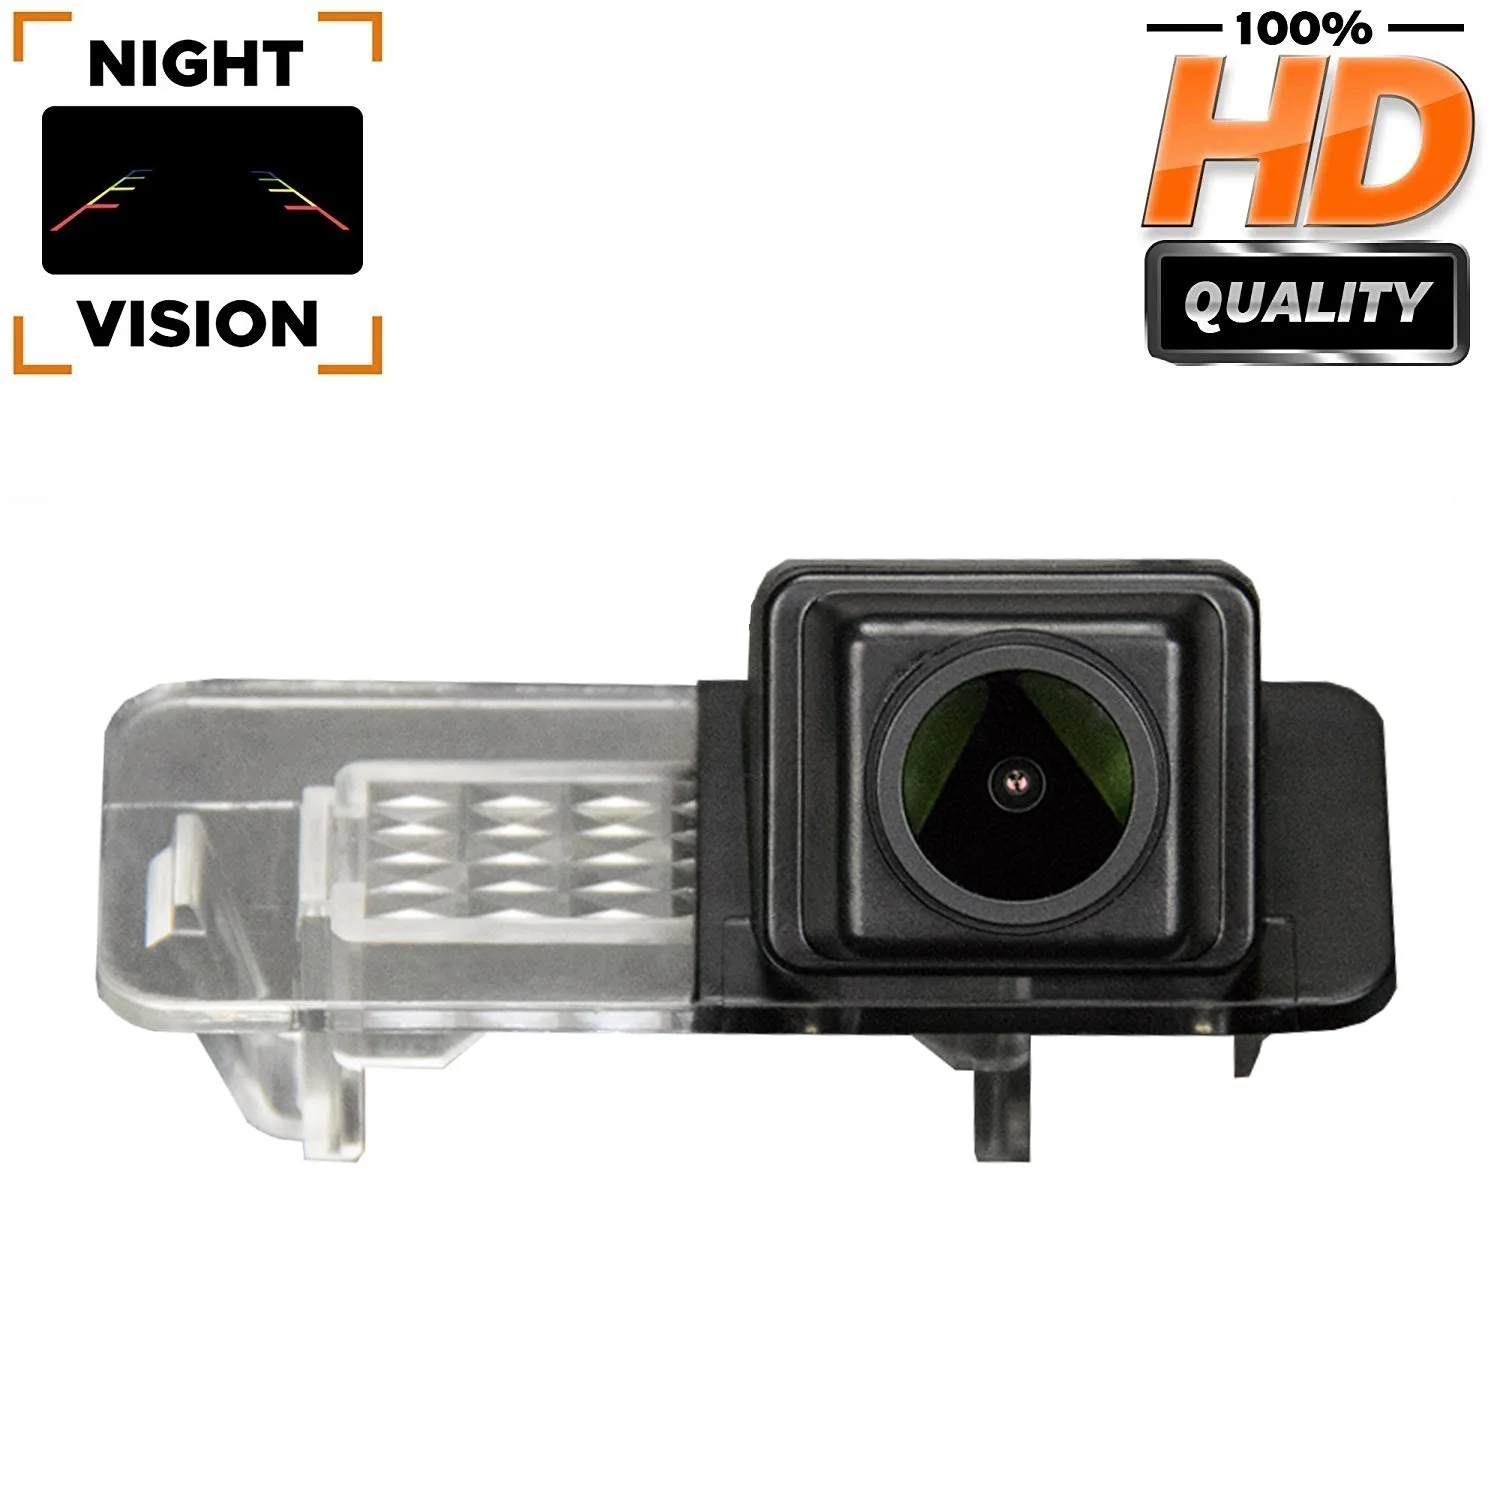 

HD 1280*720P камера заднего вида для MB Mercedes Smart R300/R350/Fortwo Smart ED/Smart 451 2007-2014, камера для освещения номерного знака